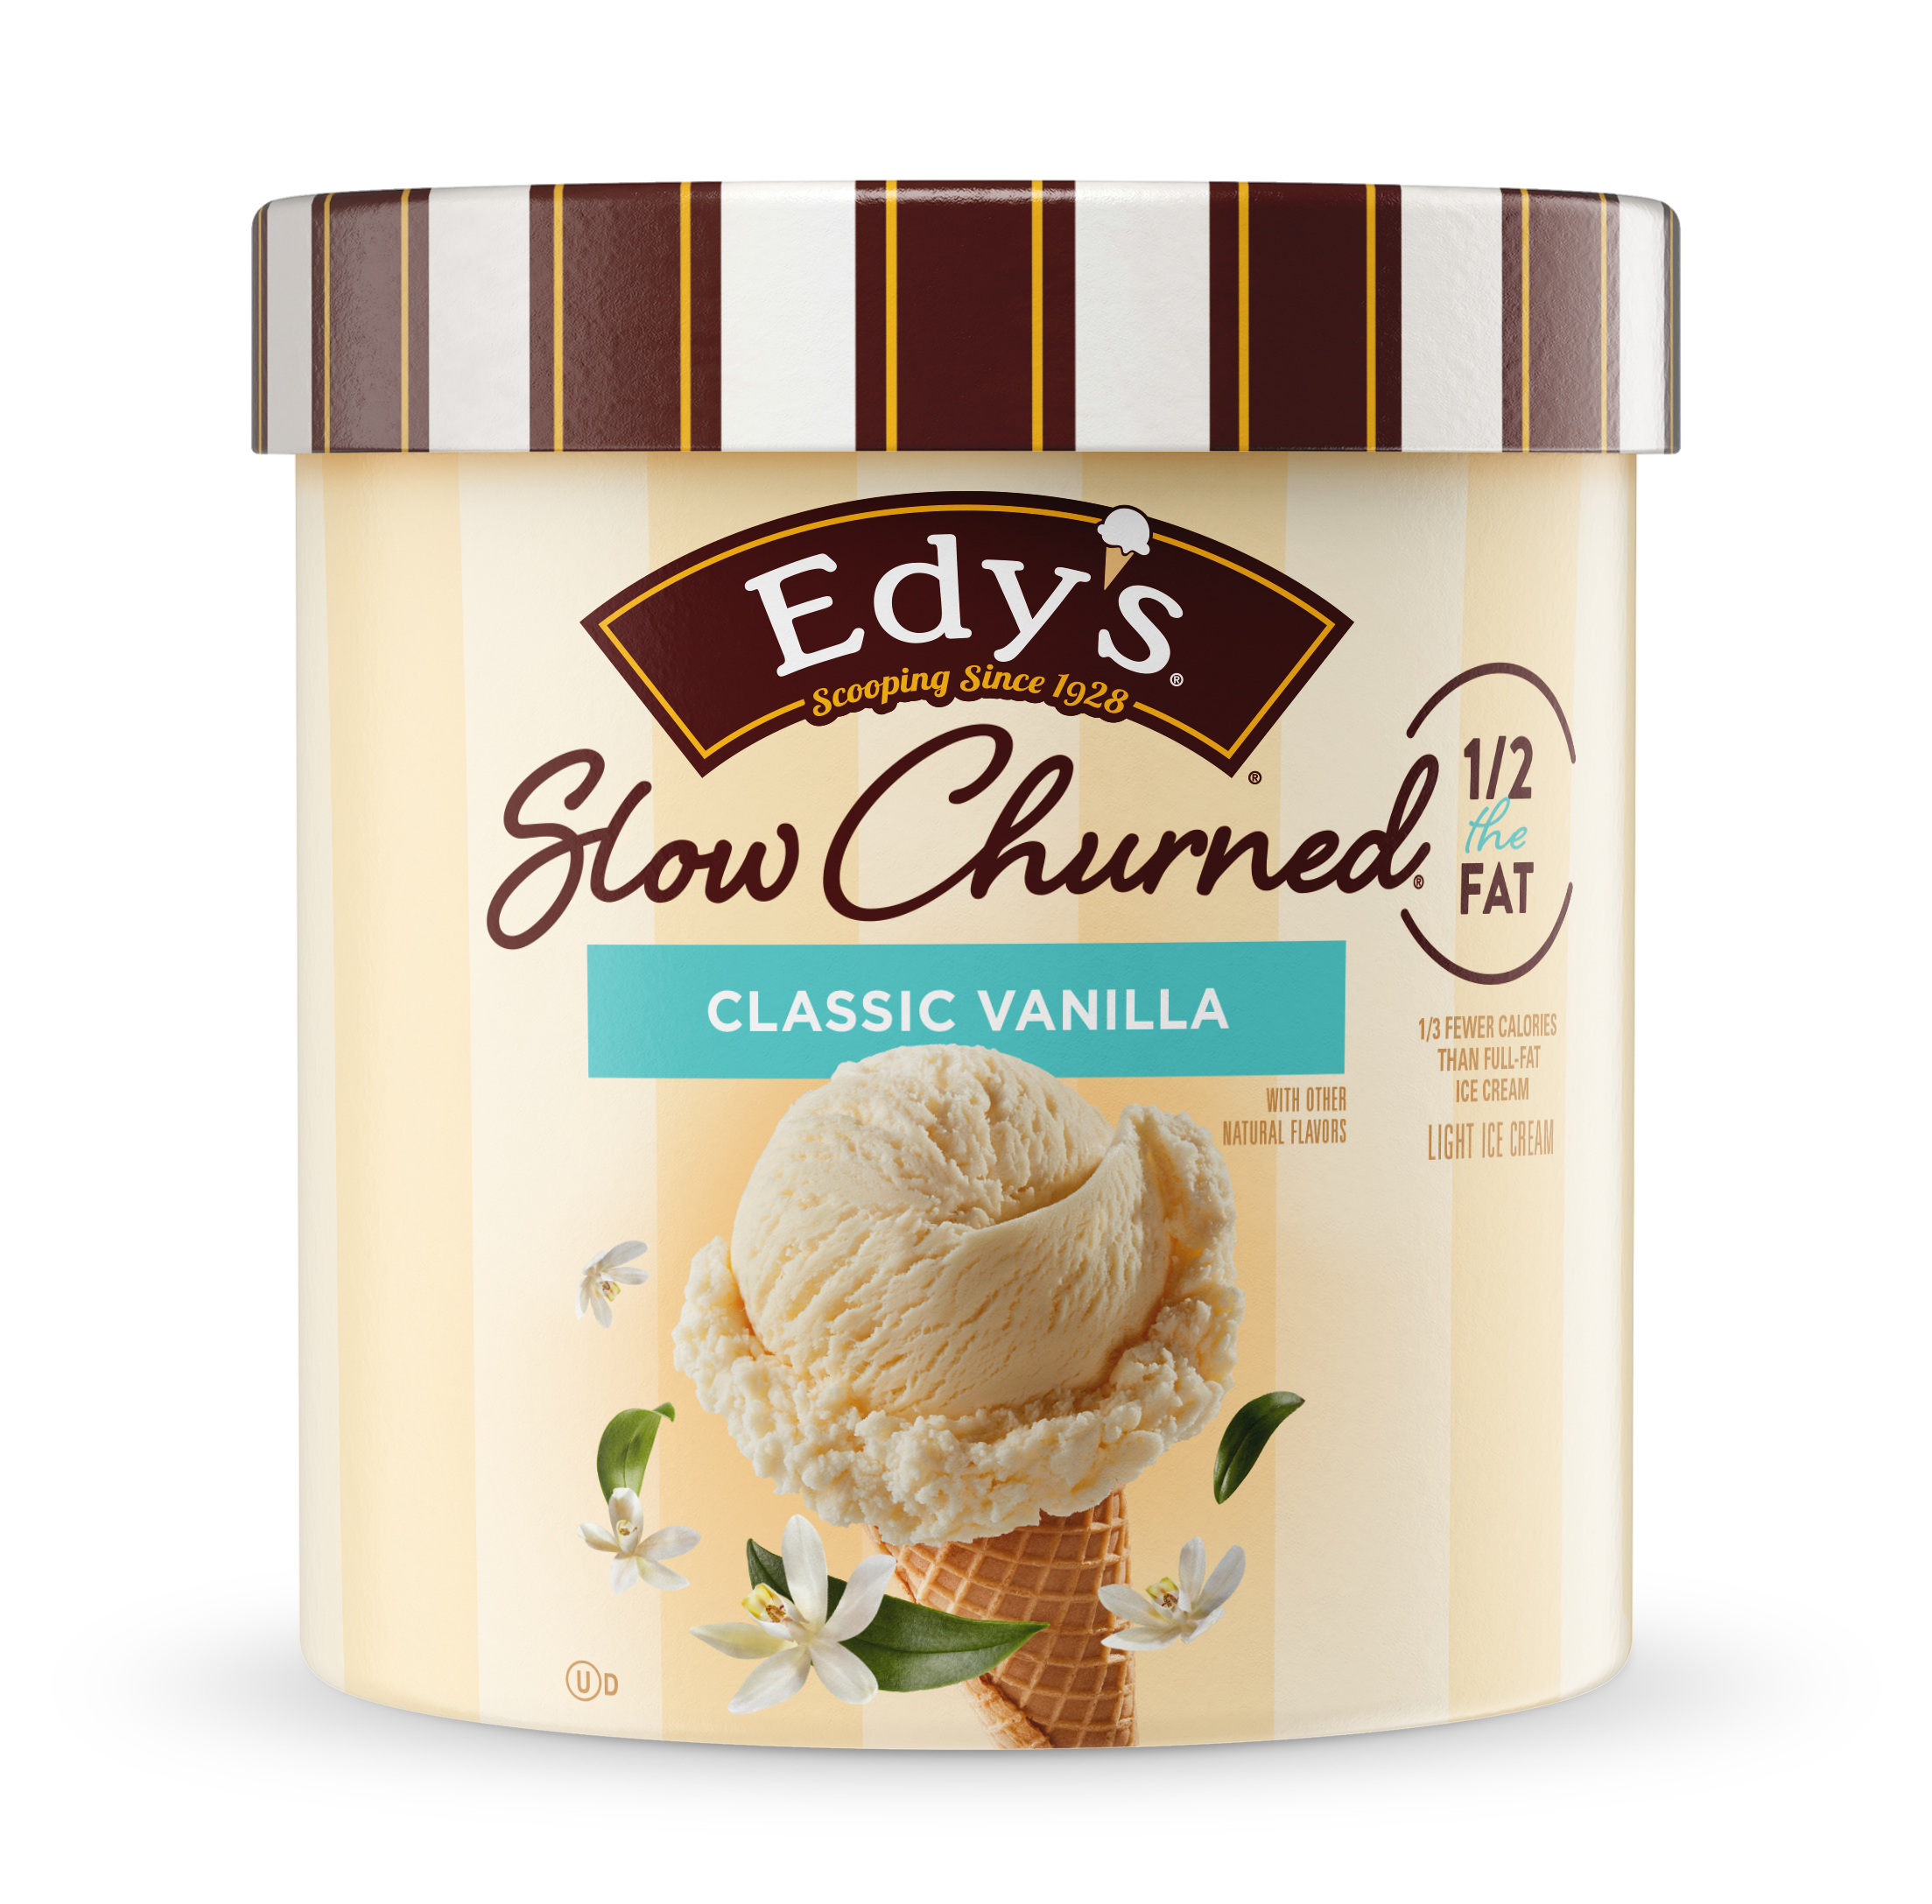 Carton of Edy's slow-churned Classic Vanilla ice cream